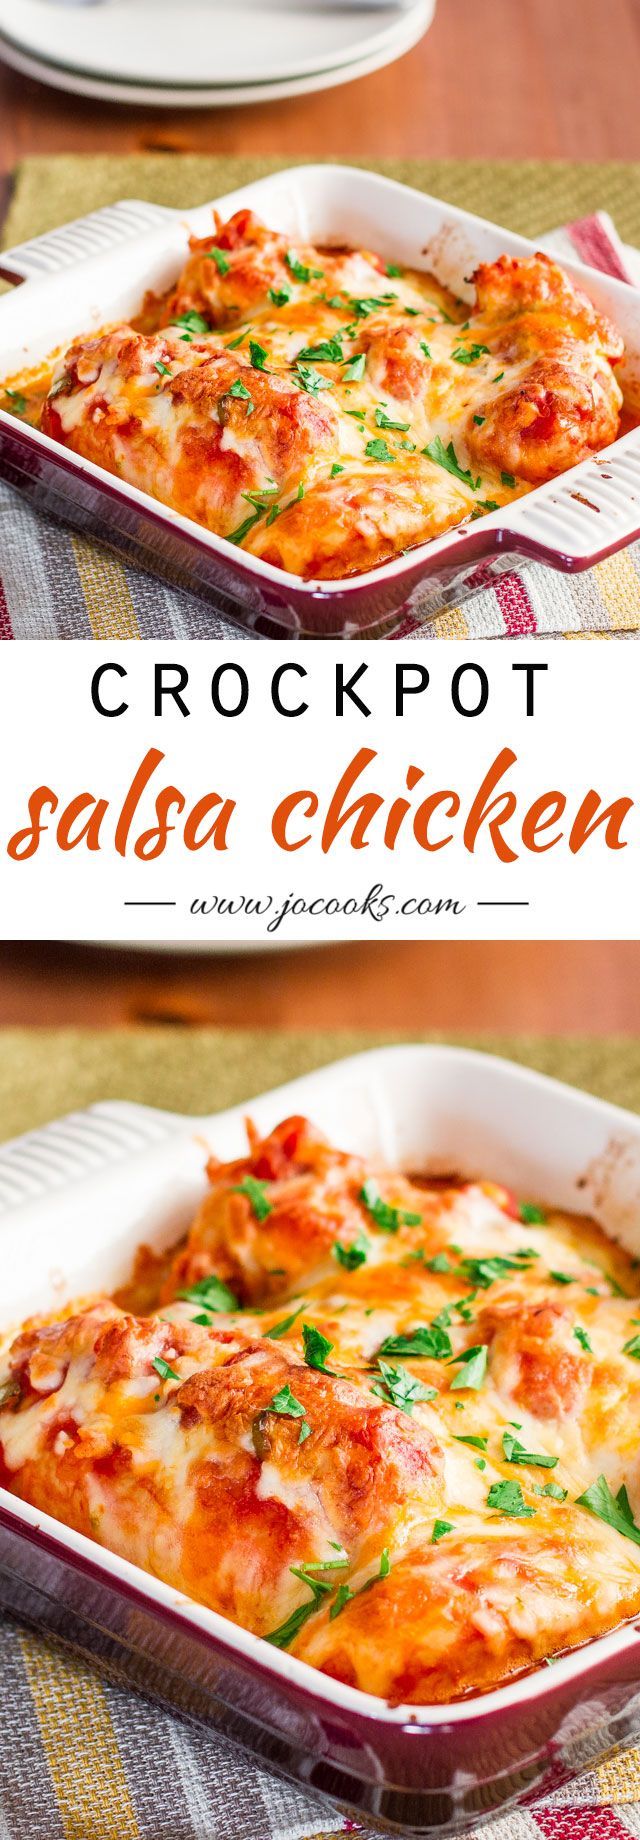 Crockpot Salsa Chicken with